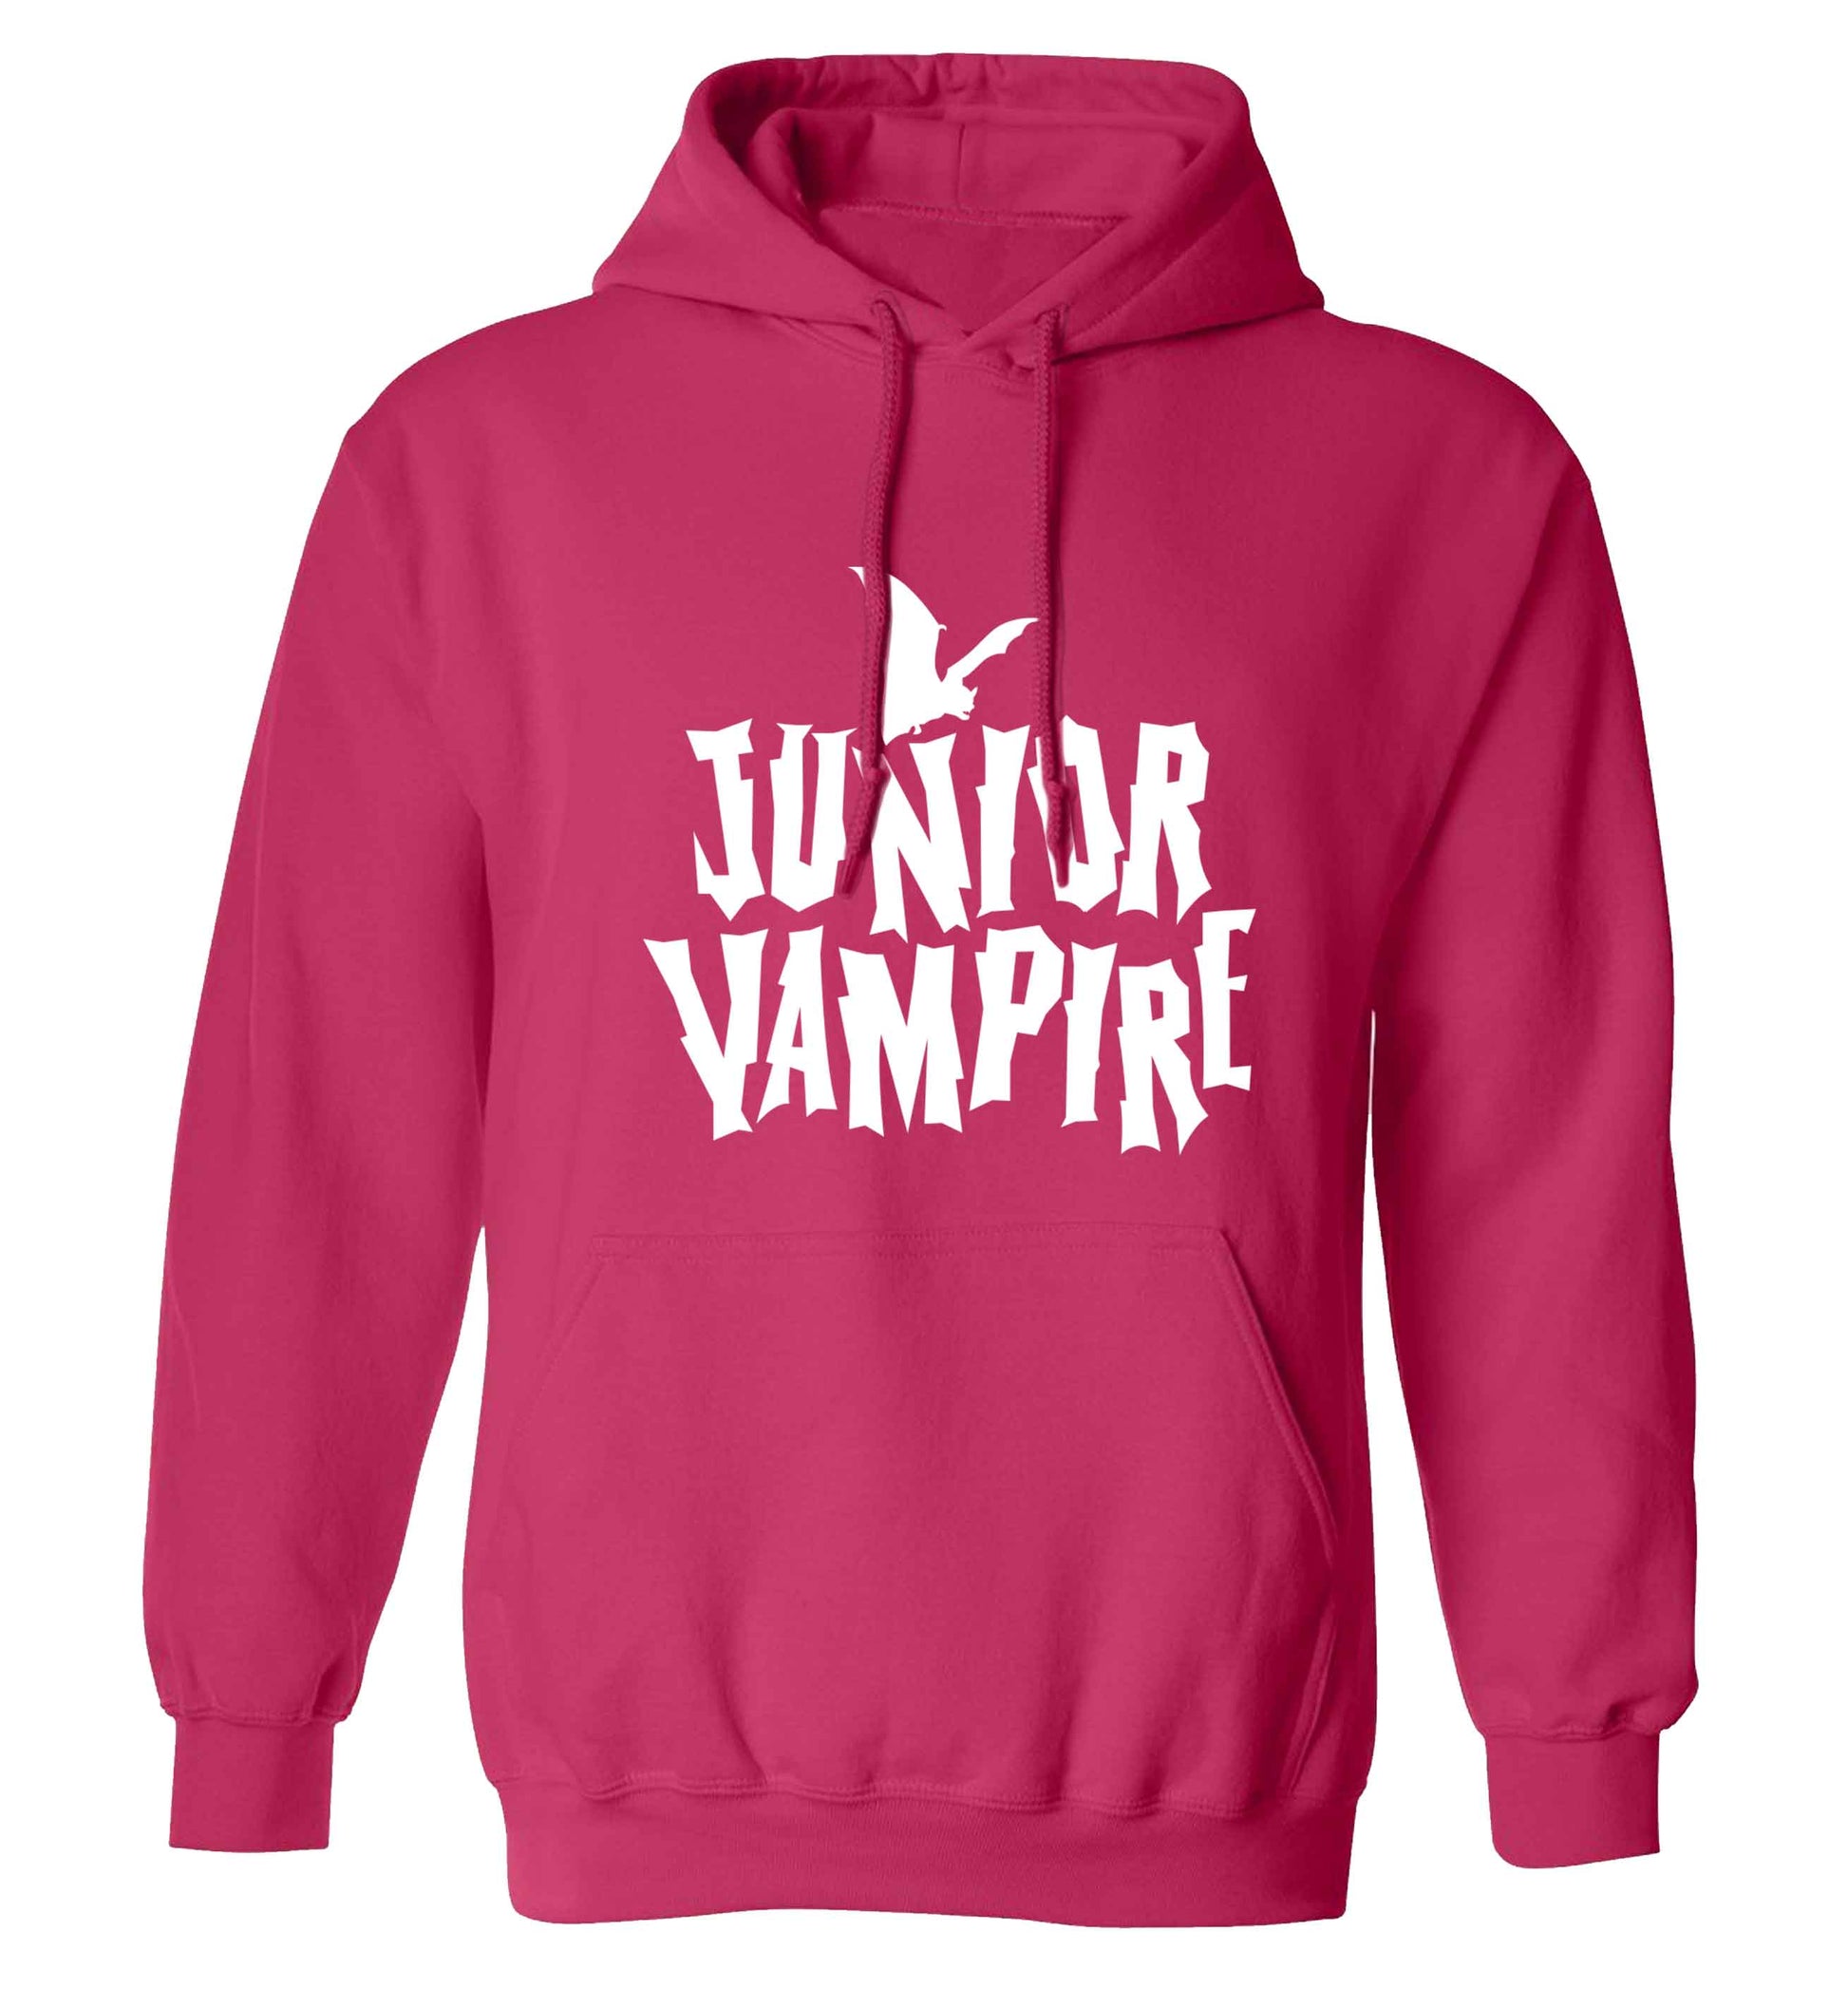 Junior vampire adults unisex pink hoodie 2XL